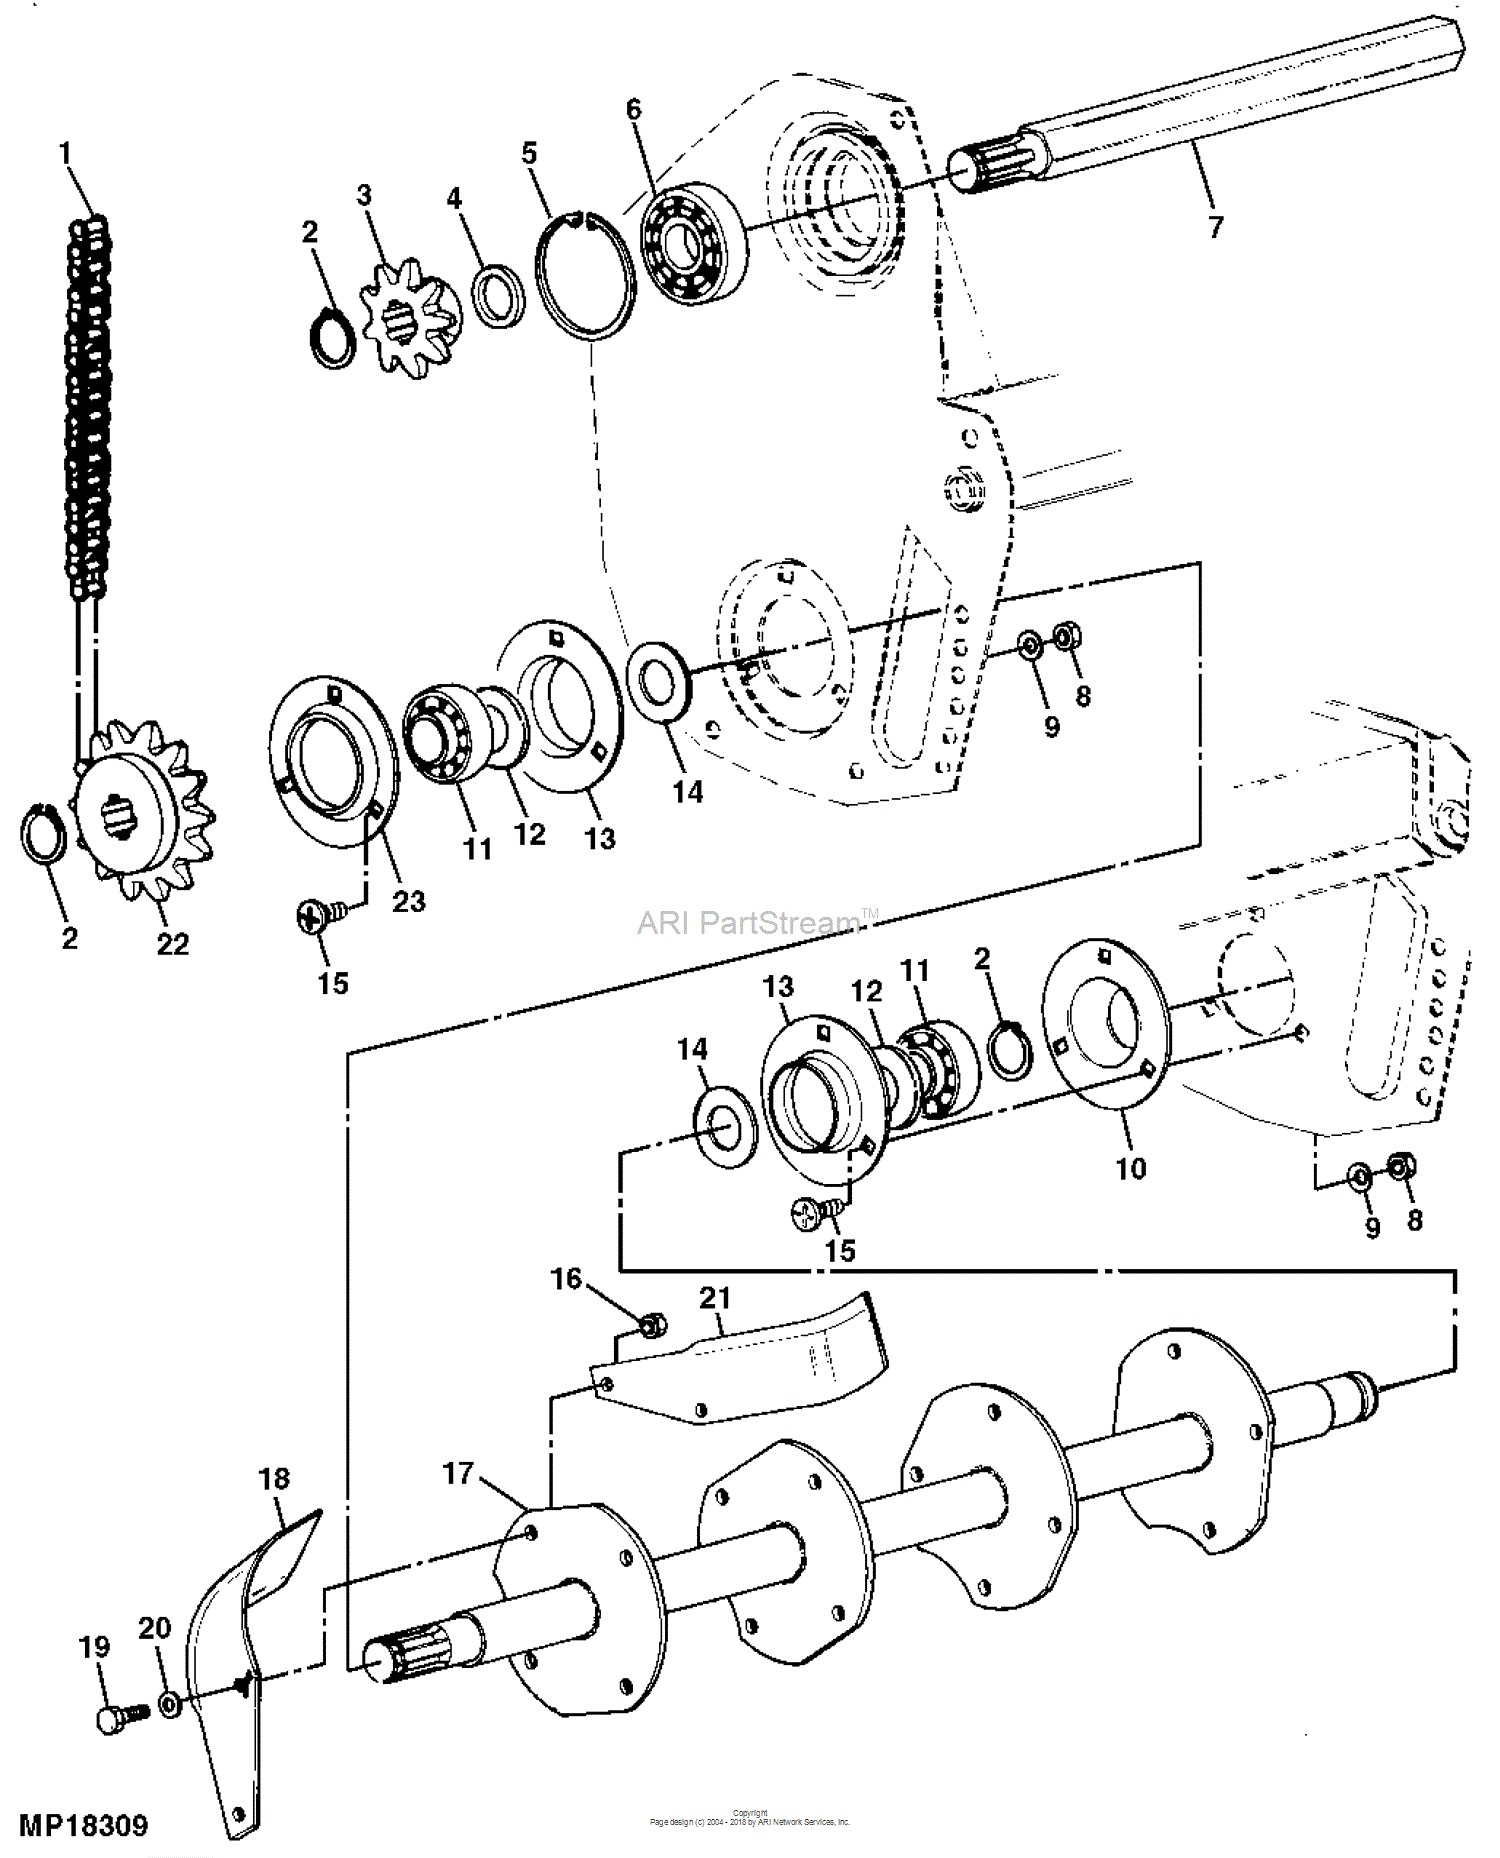 Disc Harrow Parts Diagram John Deere Parts Diagrams John Deere Tractor Trunk Pc9151 Drive Of Disc Harrow Parts Diagram